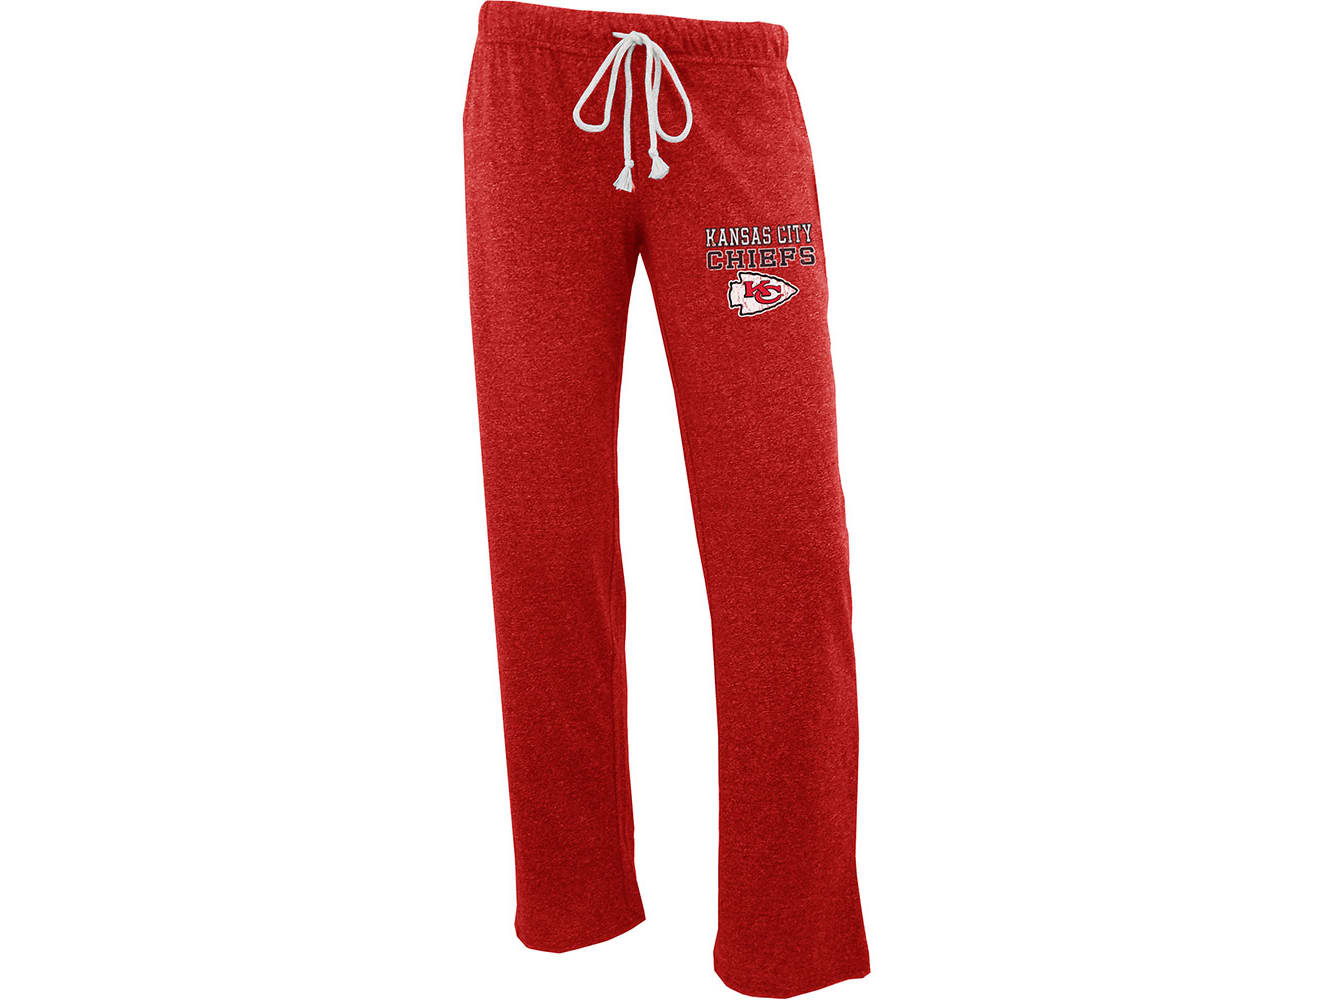 Women's Toronto FC Concepts Sport Red Quest Knit Capri Pants